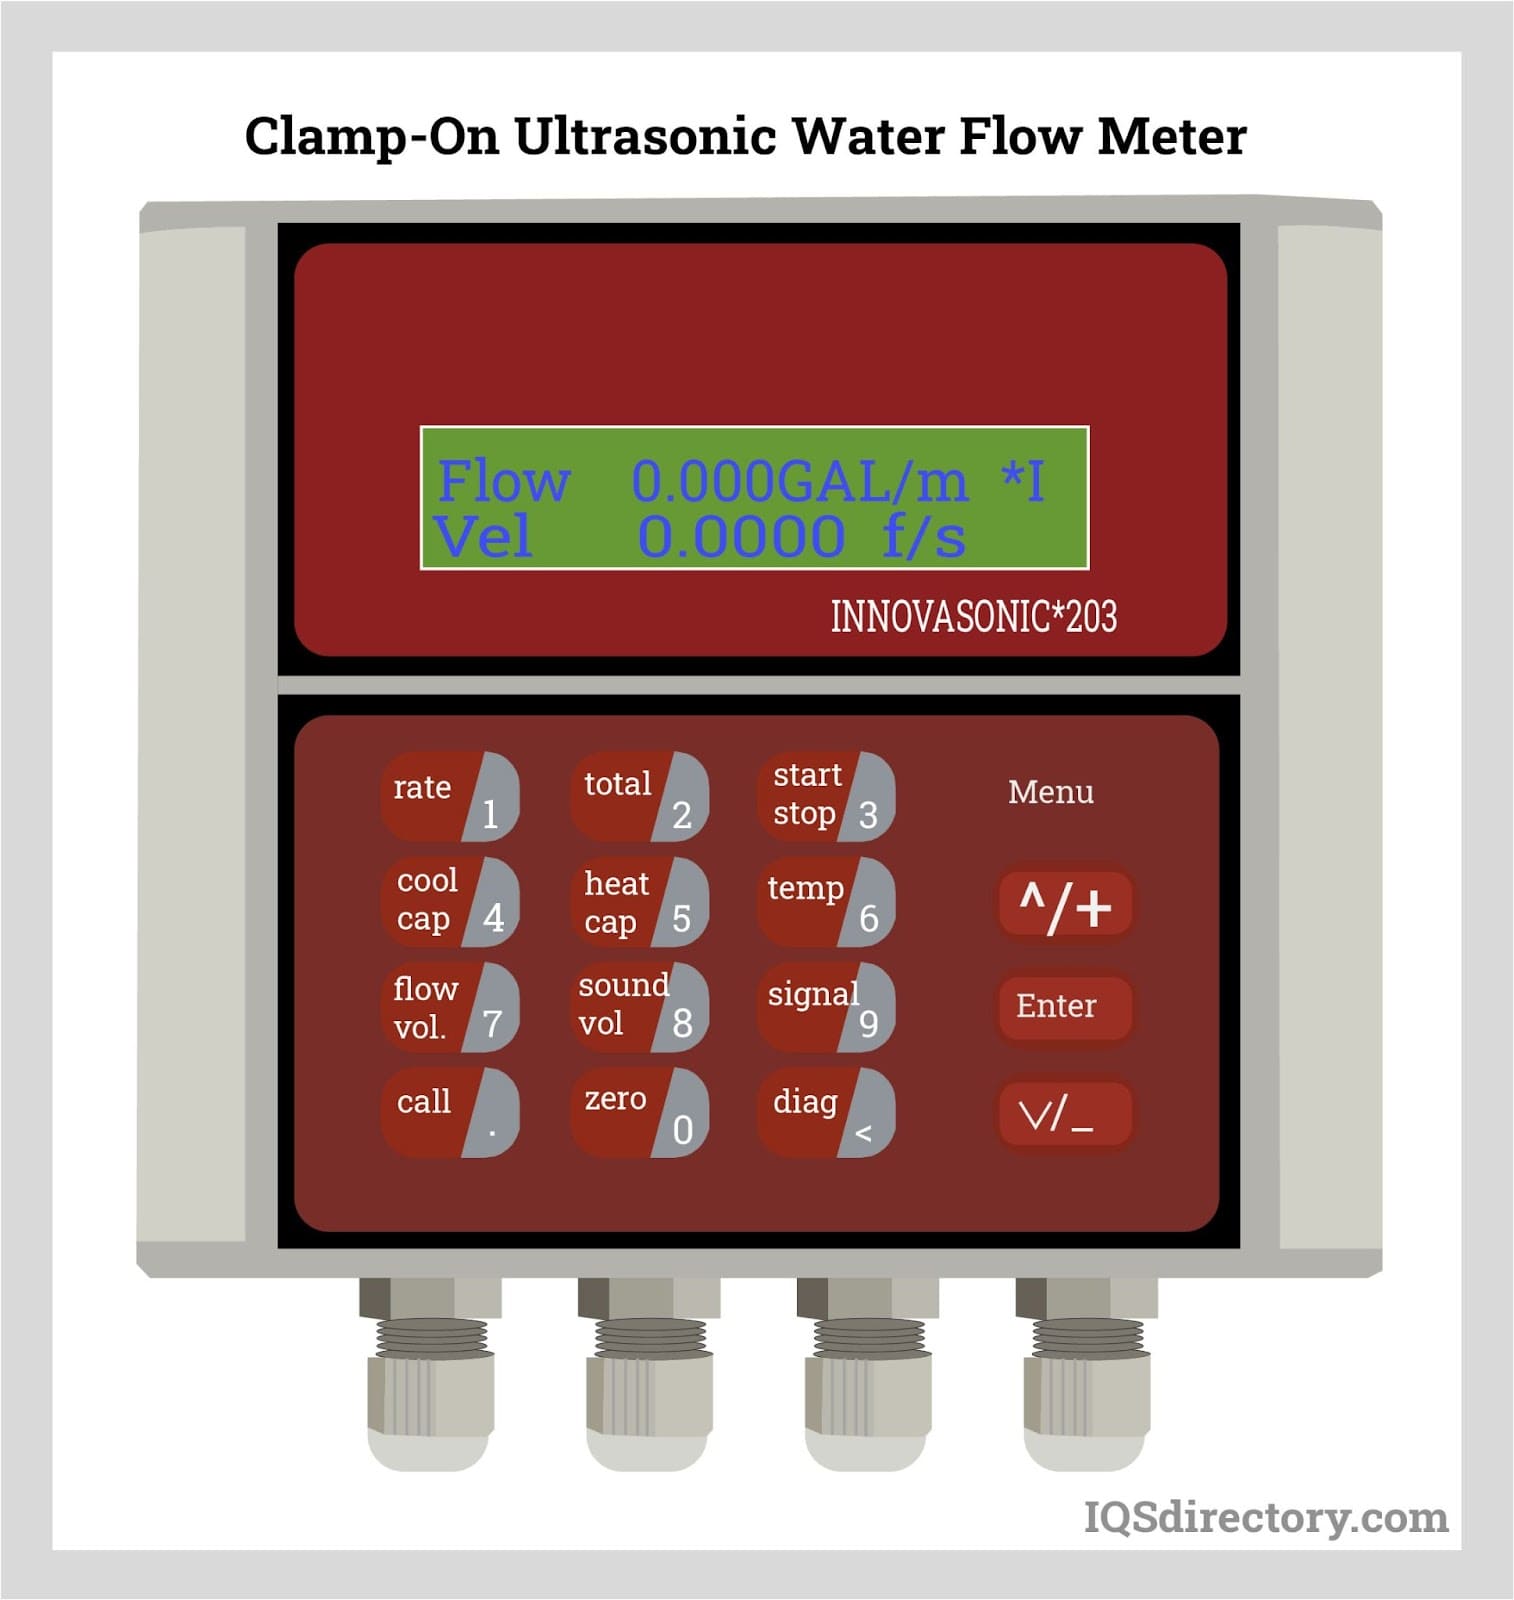 Clamp-On Ultrasonic Water Flow Meter